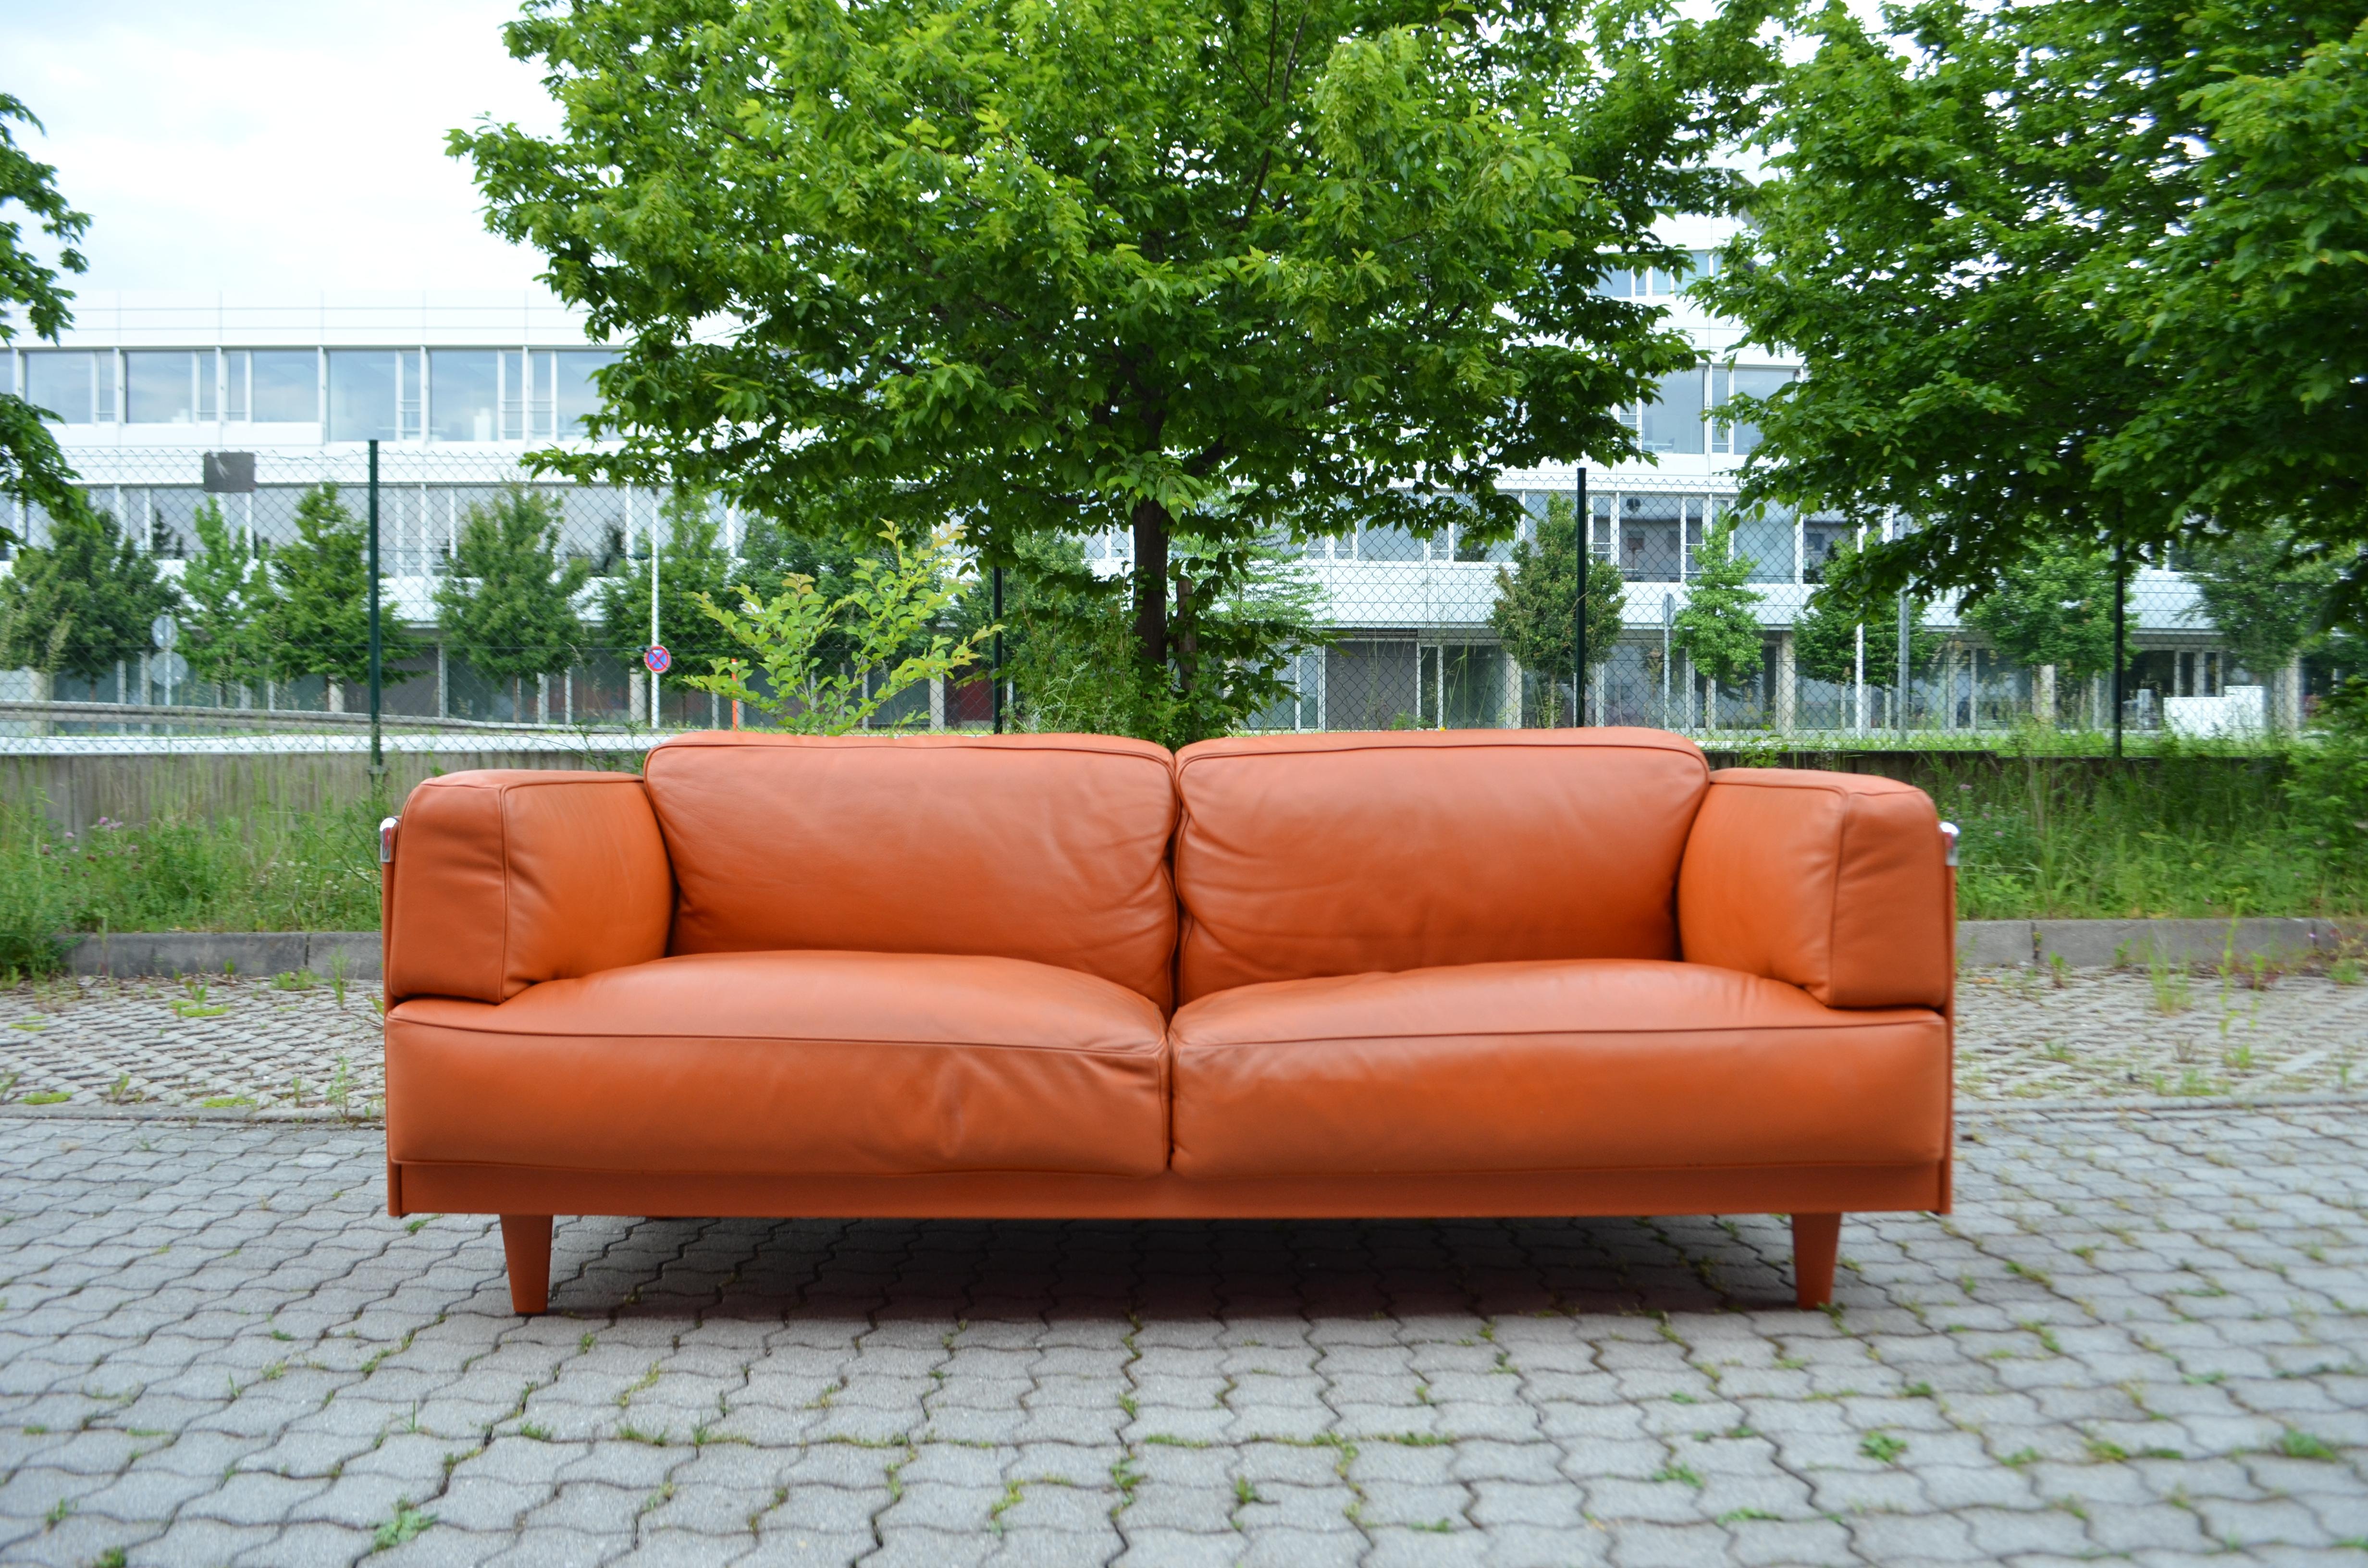 Der italienische Architekt Pierluigi Cerri hat dieses klassische Sofa für Poltrona Frau entworfen.
Dieses Modell 